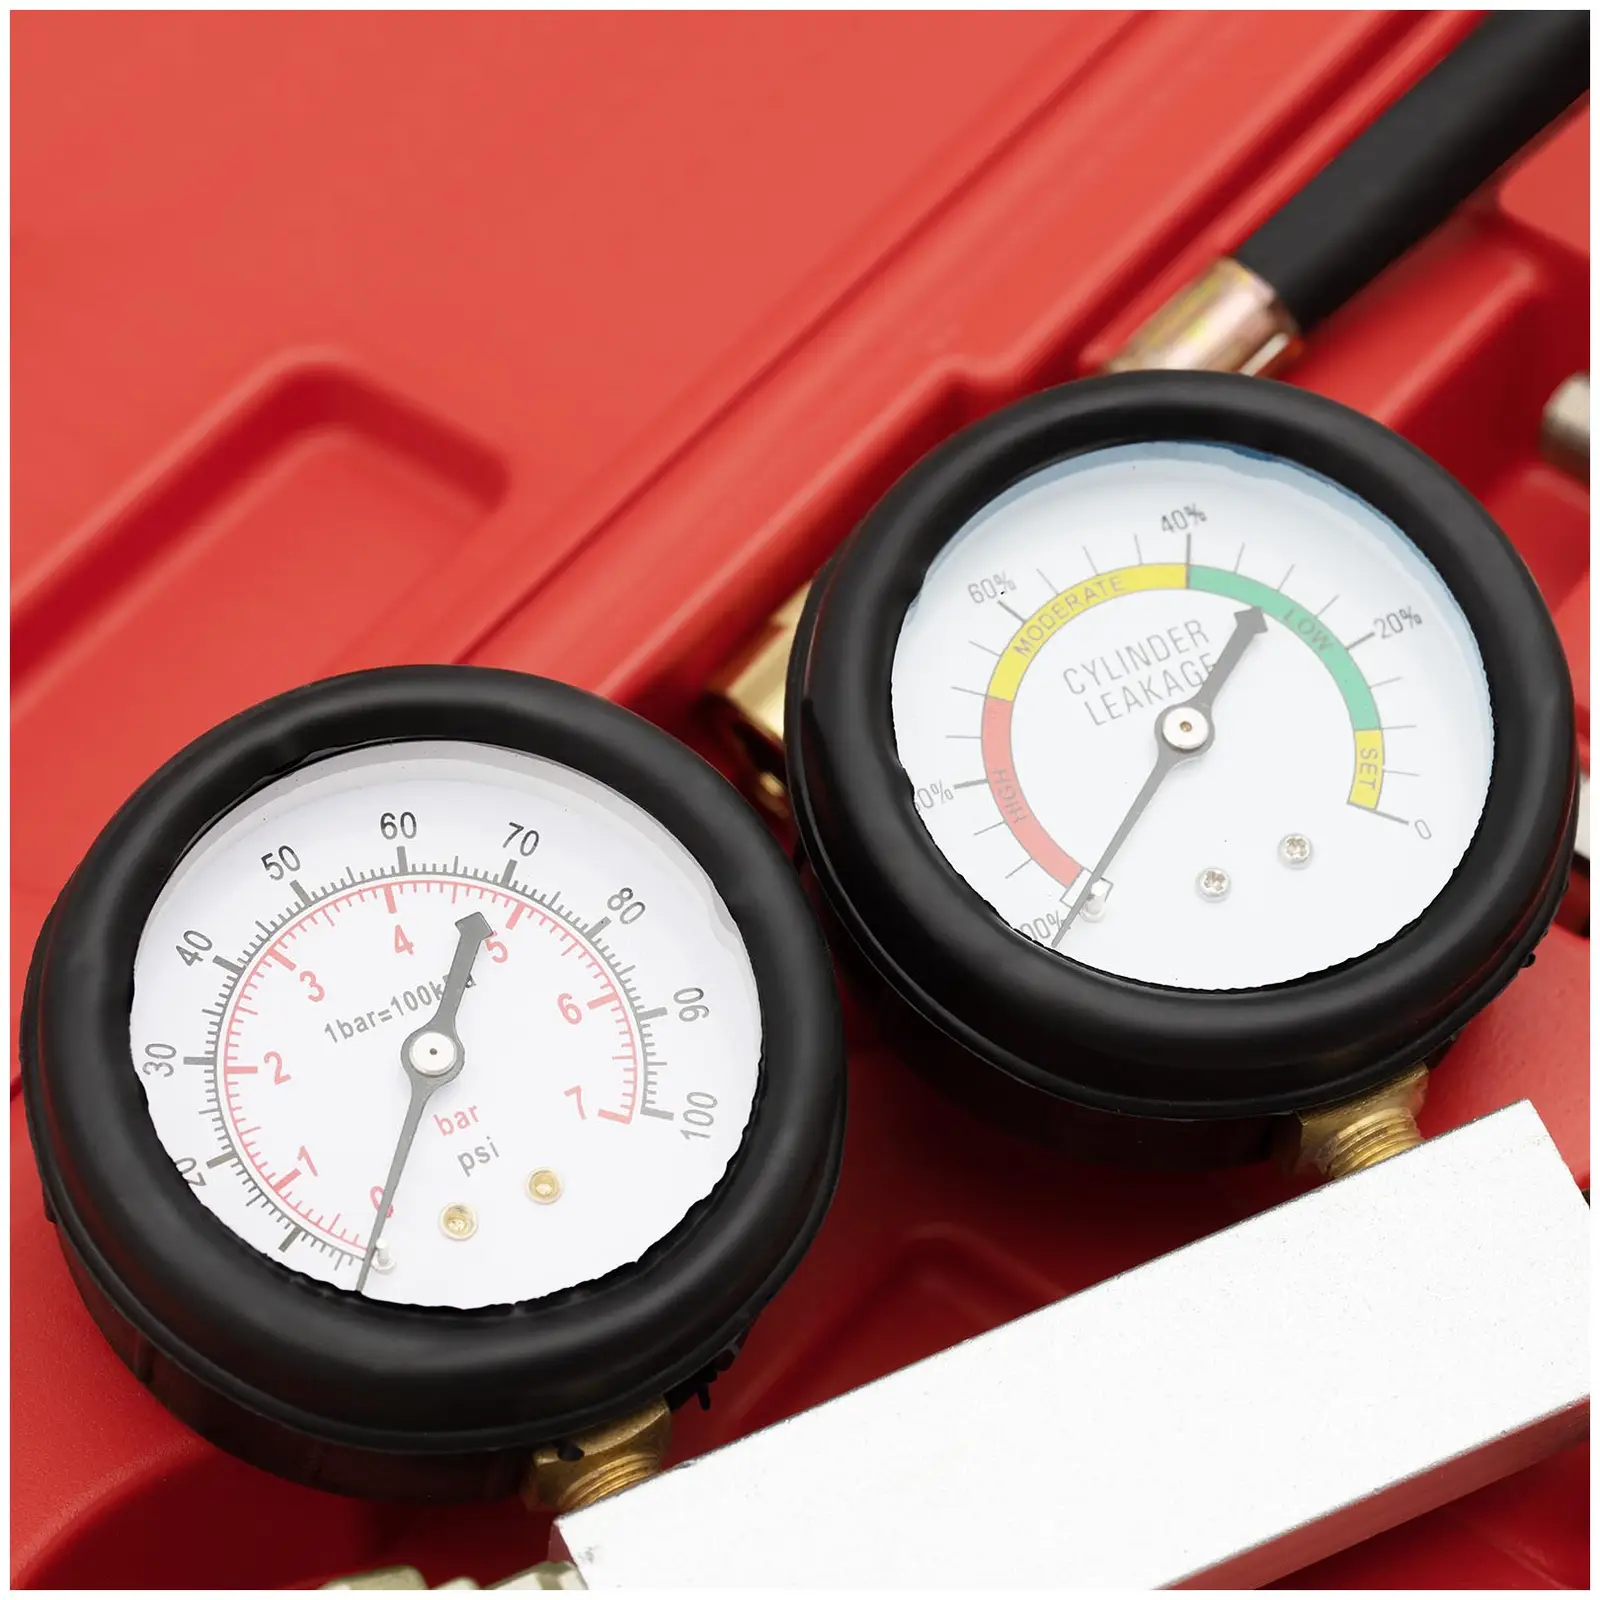 Leak Down Tester - dual pressure gauge - 0-7 bar